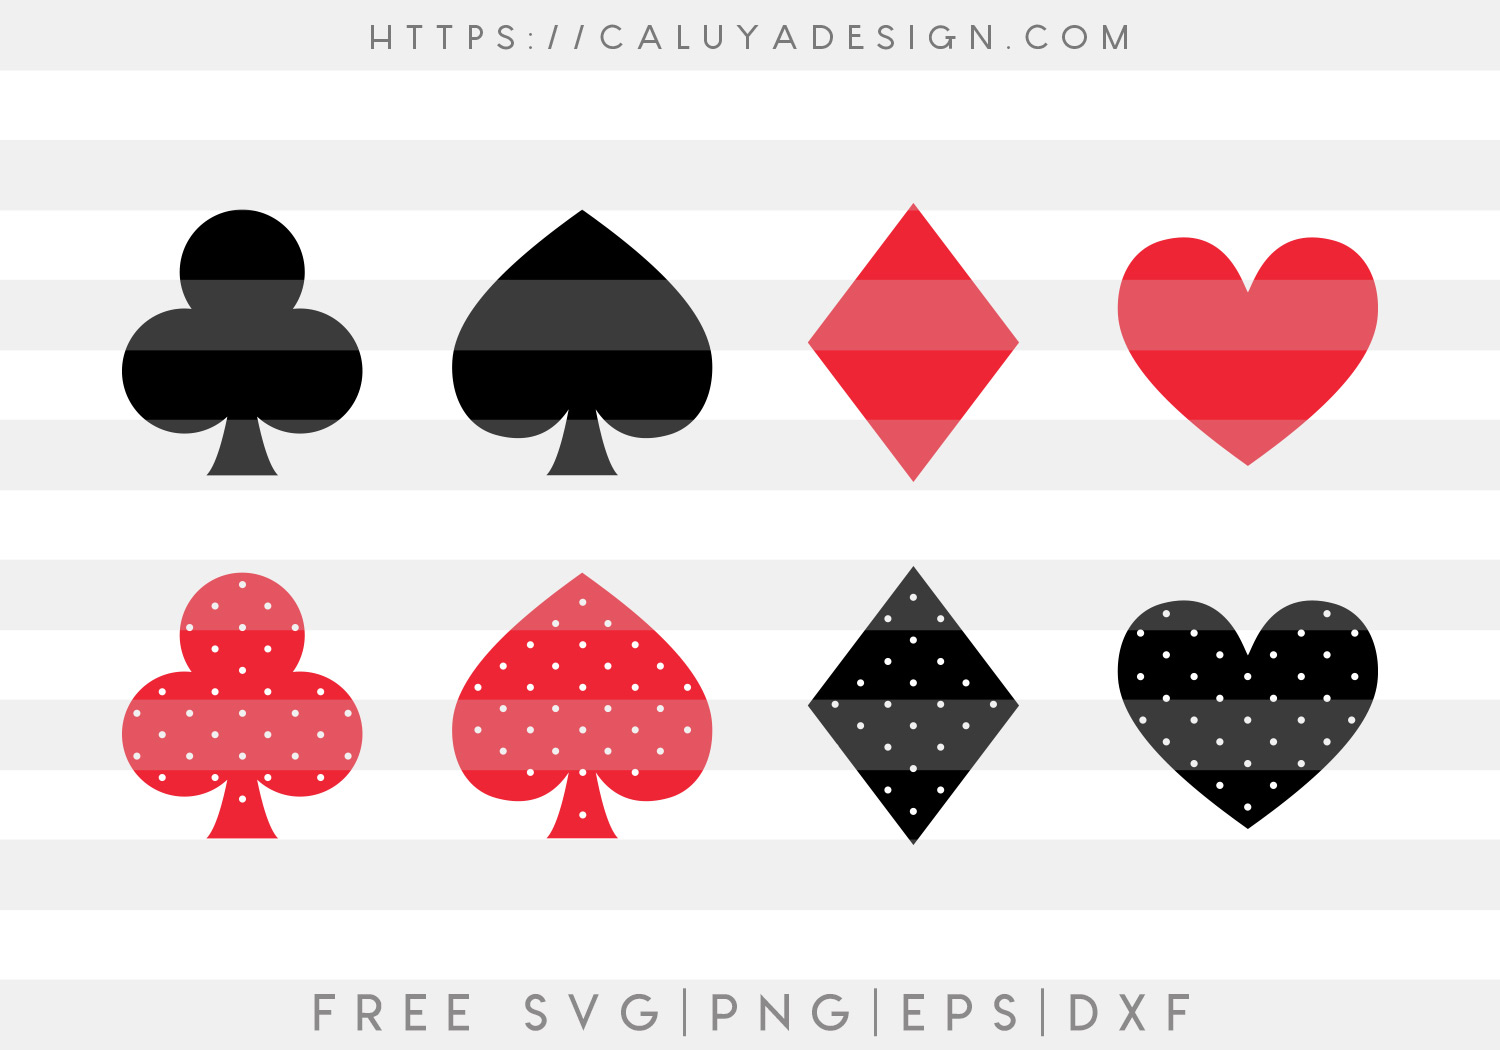 Card Symbols SVG, PNG, EPS & DXF